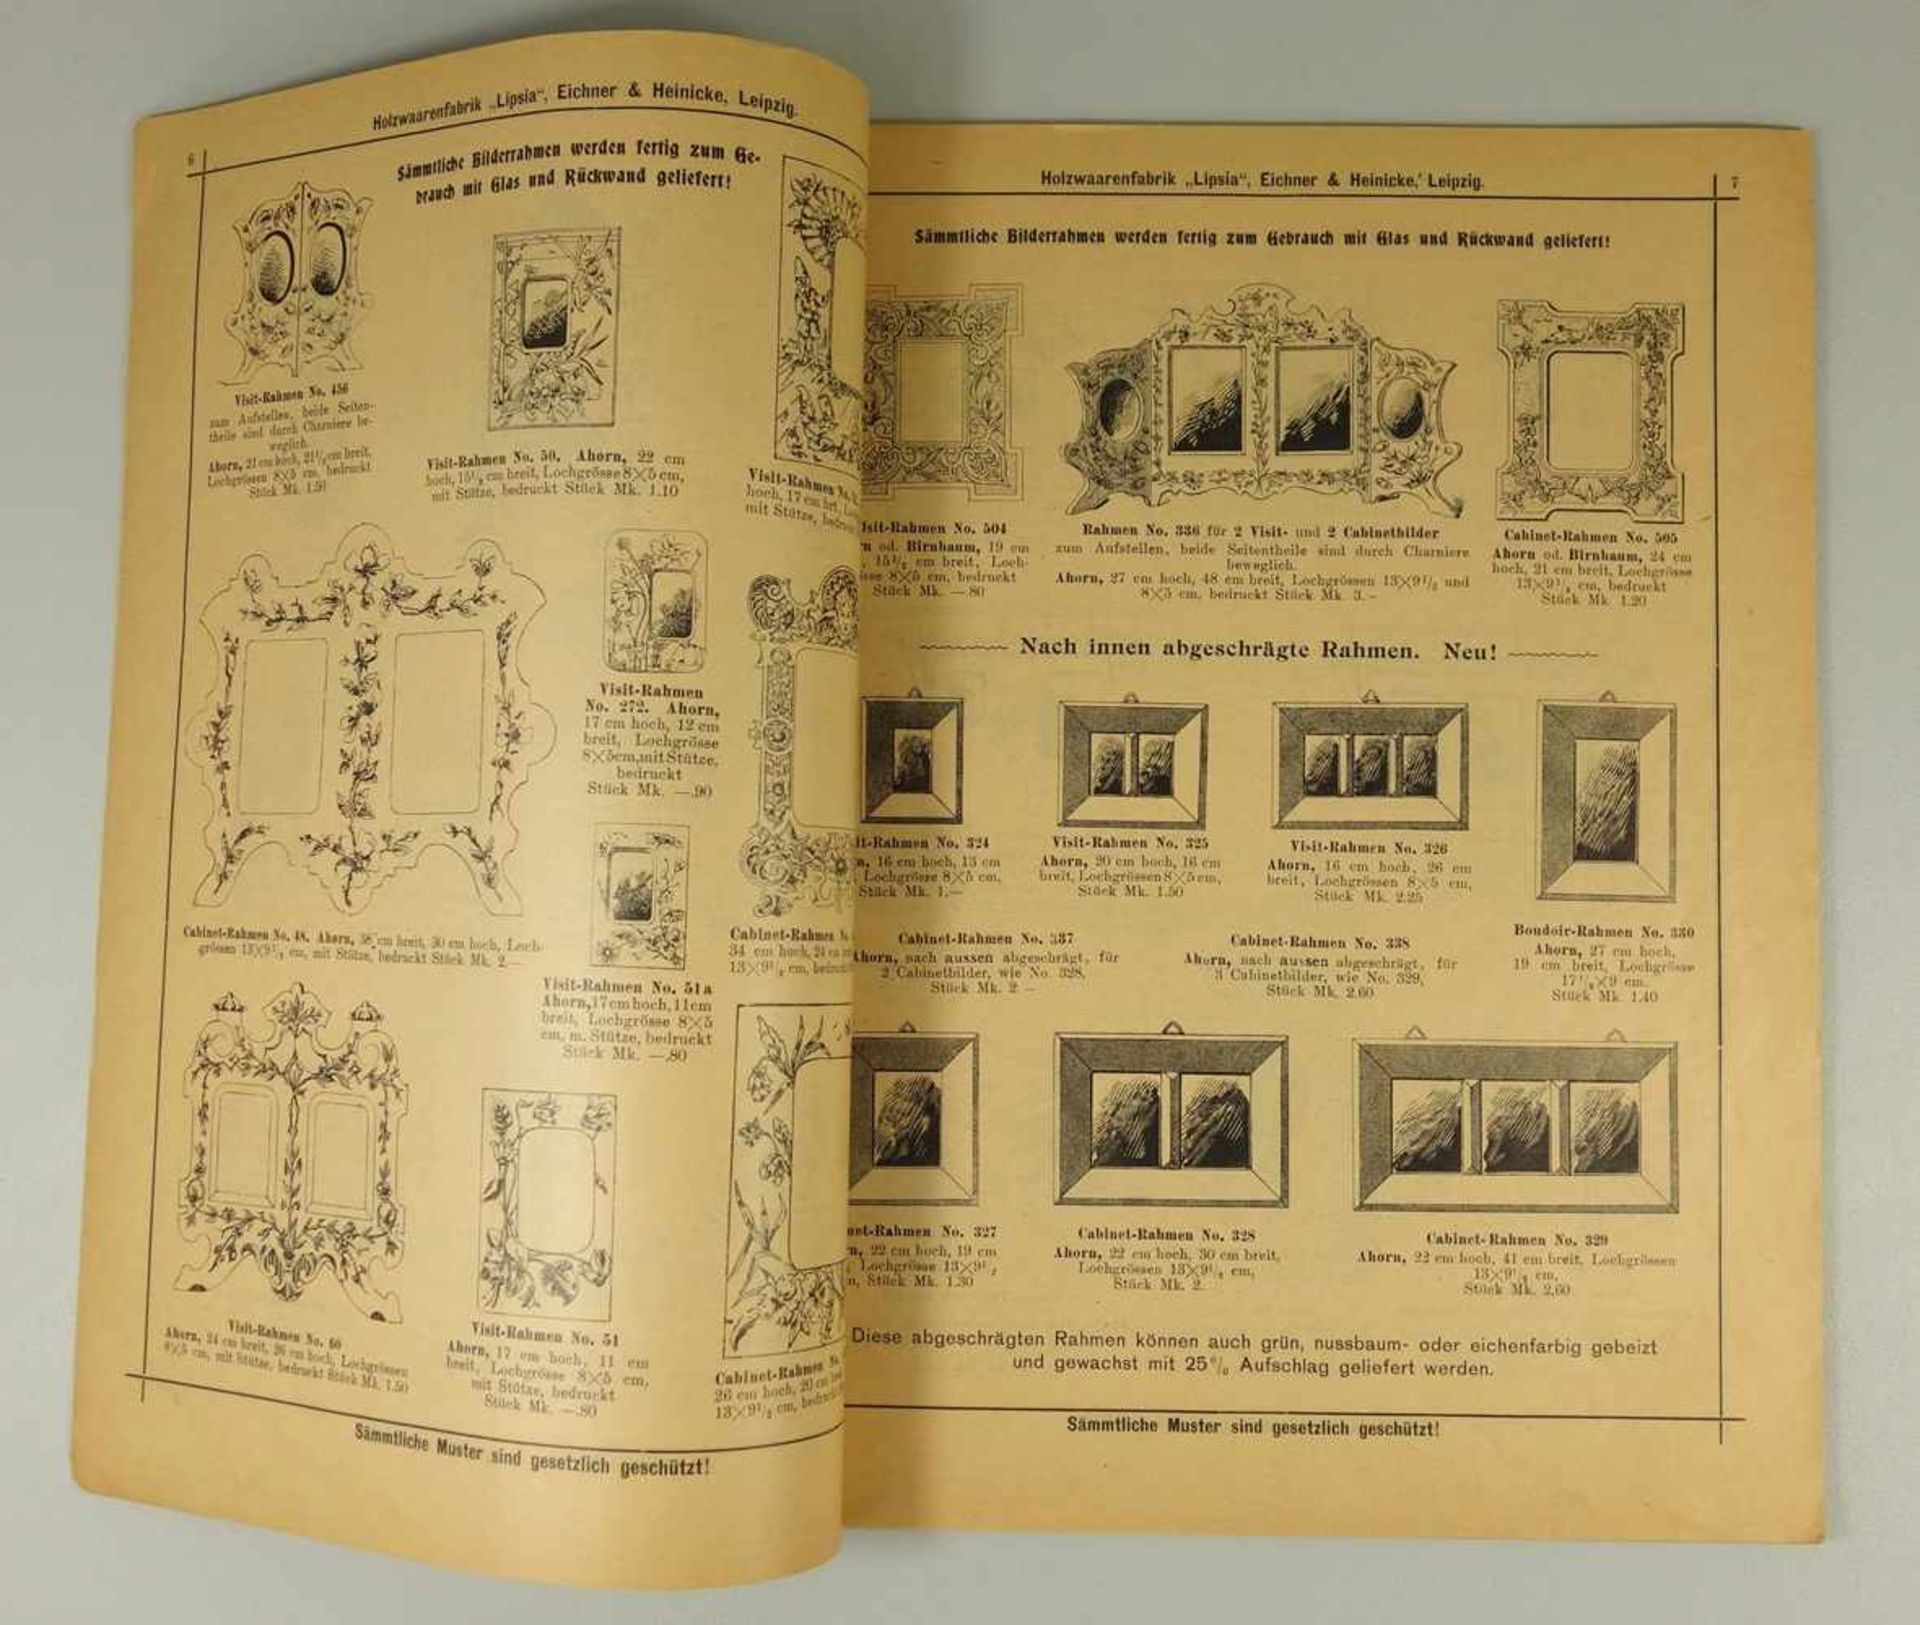 Katalog der "Holzwaarenfabrik "Lipsia", Eichner&Heinicke, Leipzig, um 1900, 86 Seiten, Deck- und